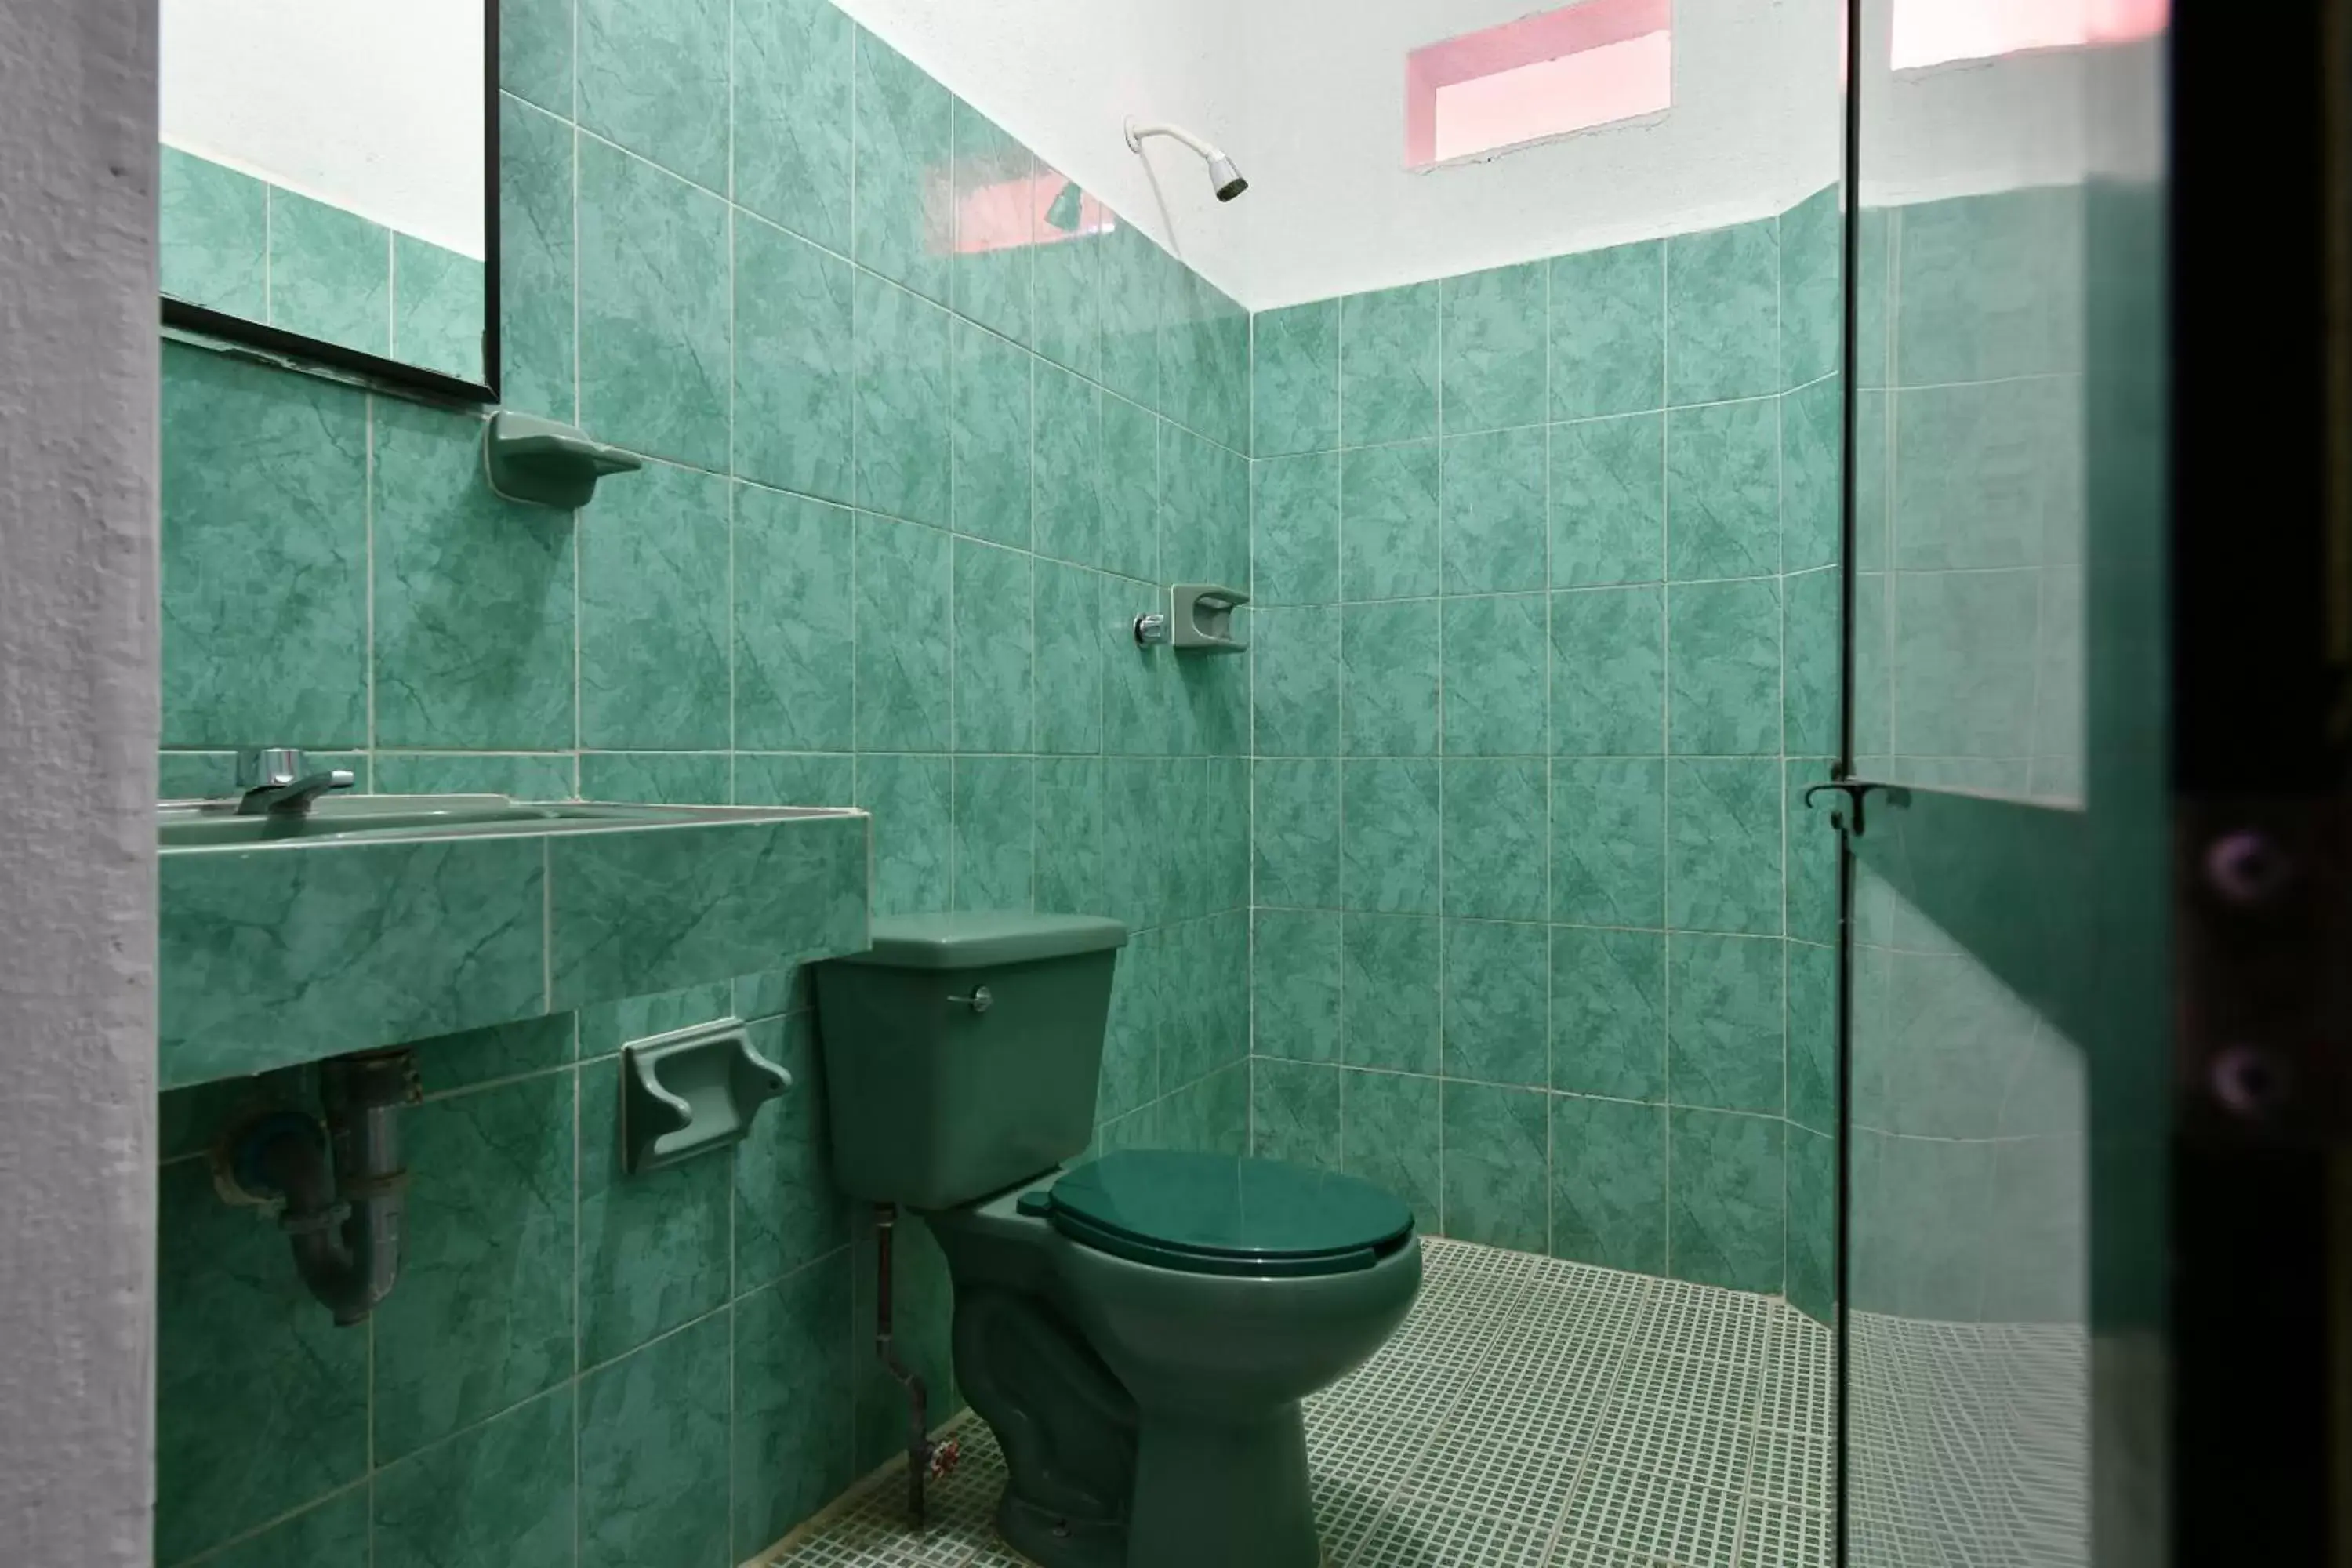 Bathroom in Hotel Costamar, Puerto Escondido